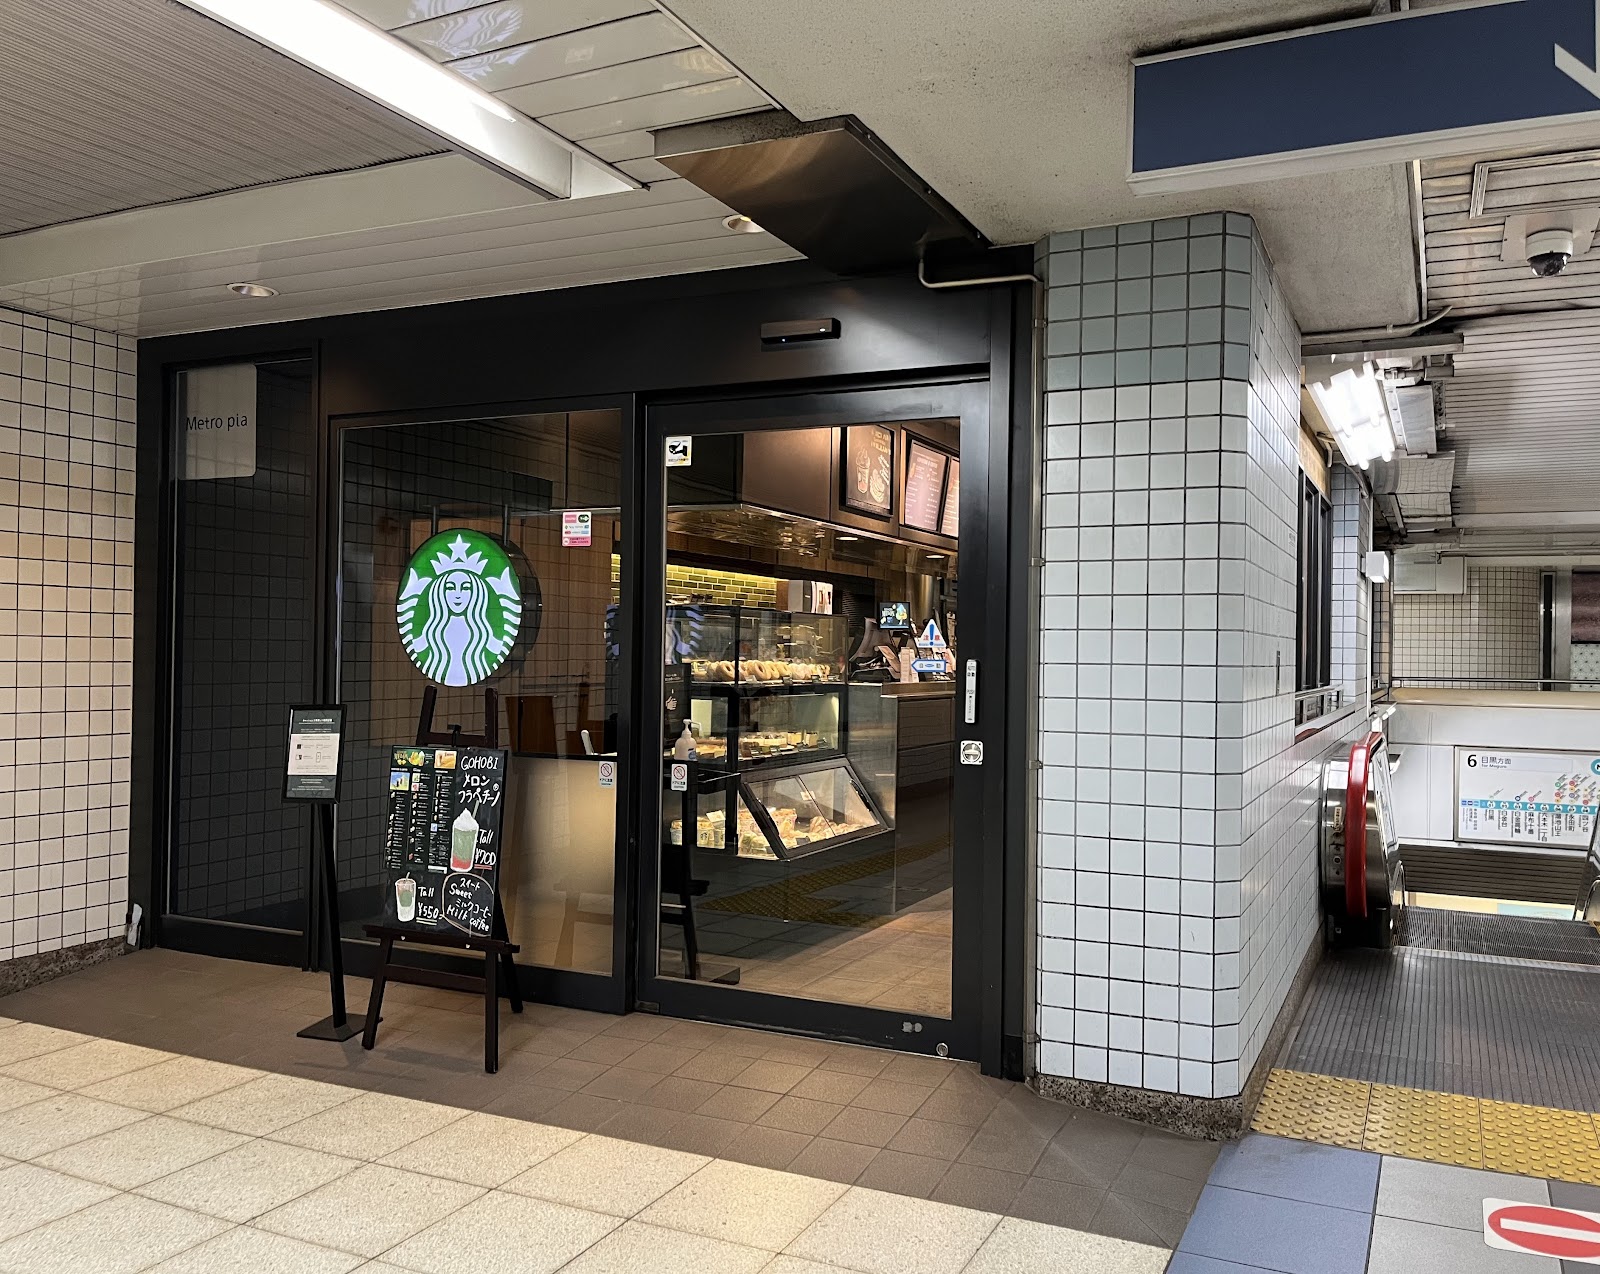 スターバックスコーヒー 飯田橋メトロピア店の風景